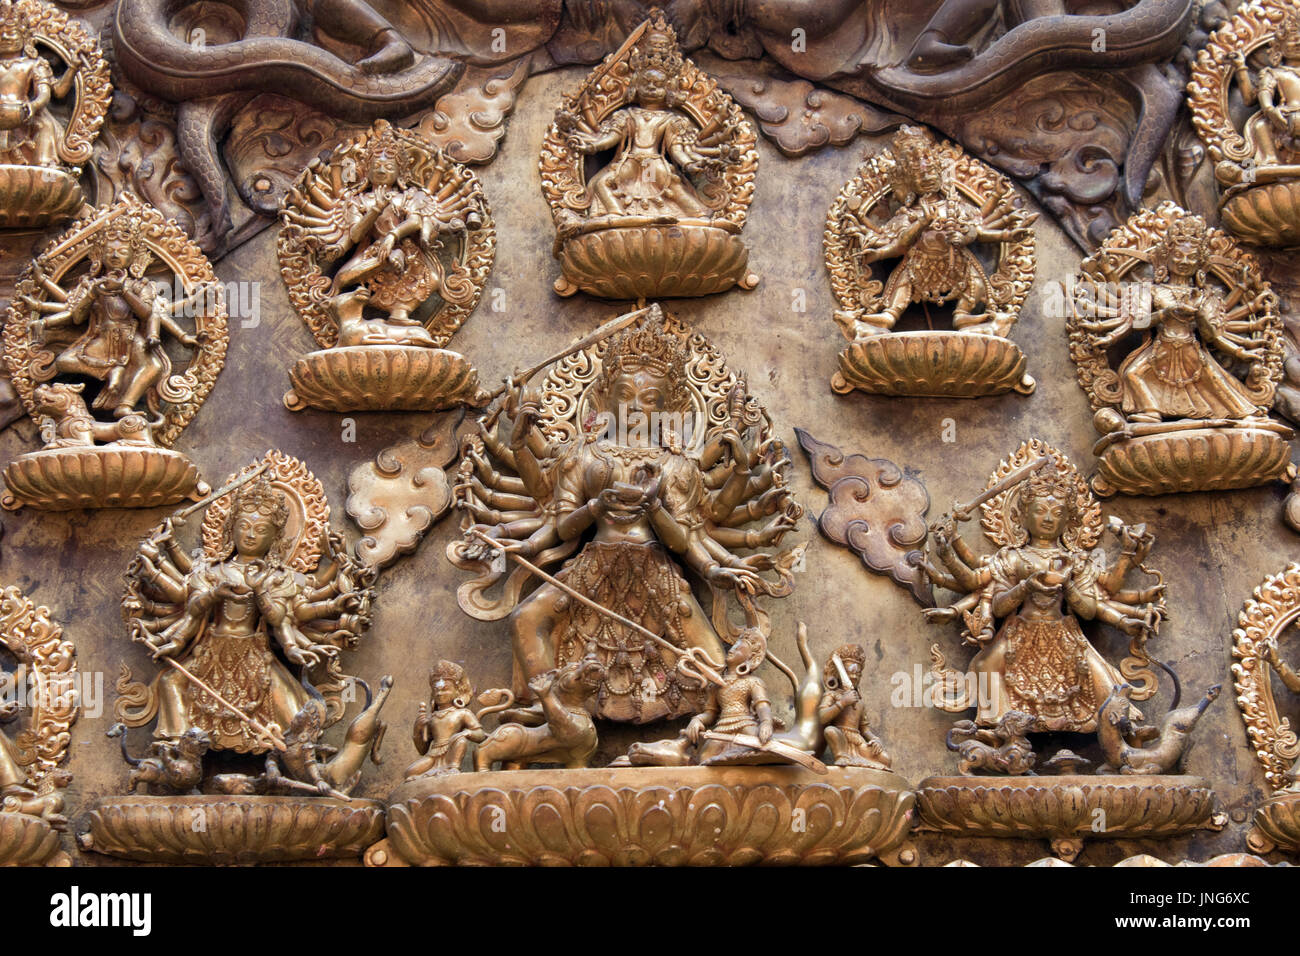 La sculpture dorée de serpents, les serpents et les dieux au-dessus de l'entrée de Taleju Bhawani Temple, Mul Chowk, Patan Durbar Square Katmandou Népal Banque D'Images